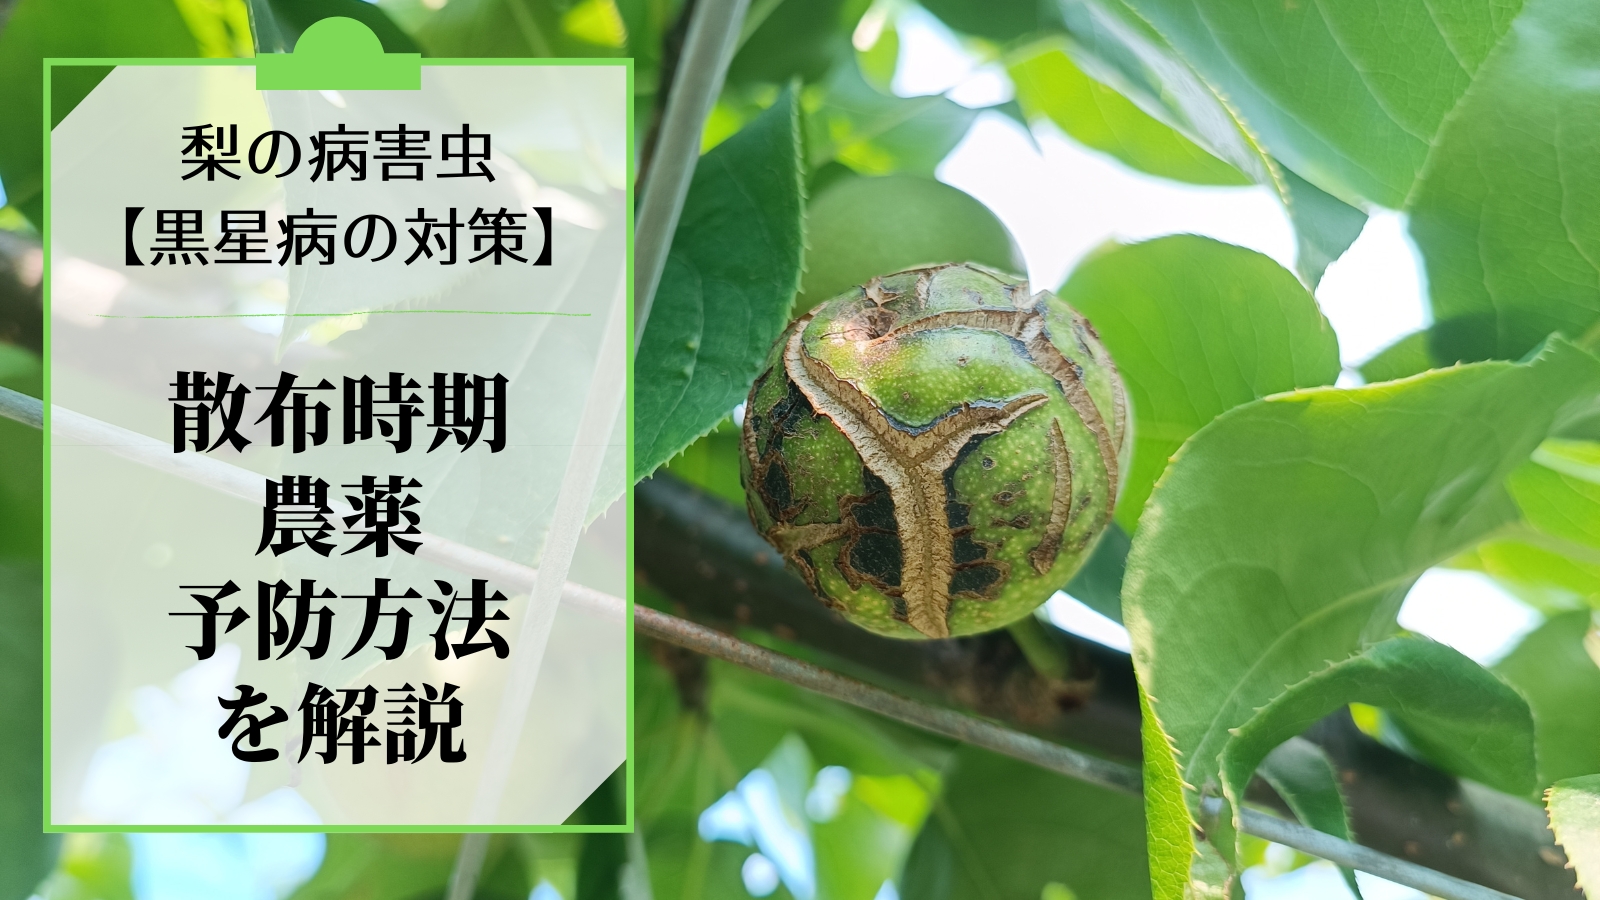 梨の黒星病の対策｜鱗片脱落期からの防除･農薬を解説 40